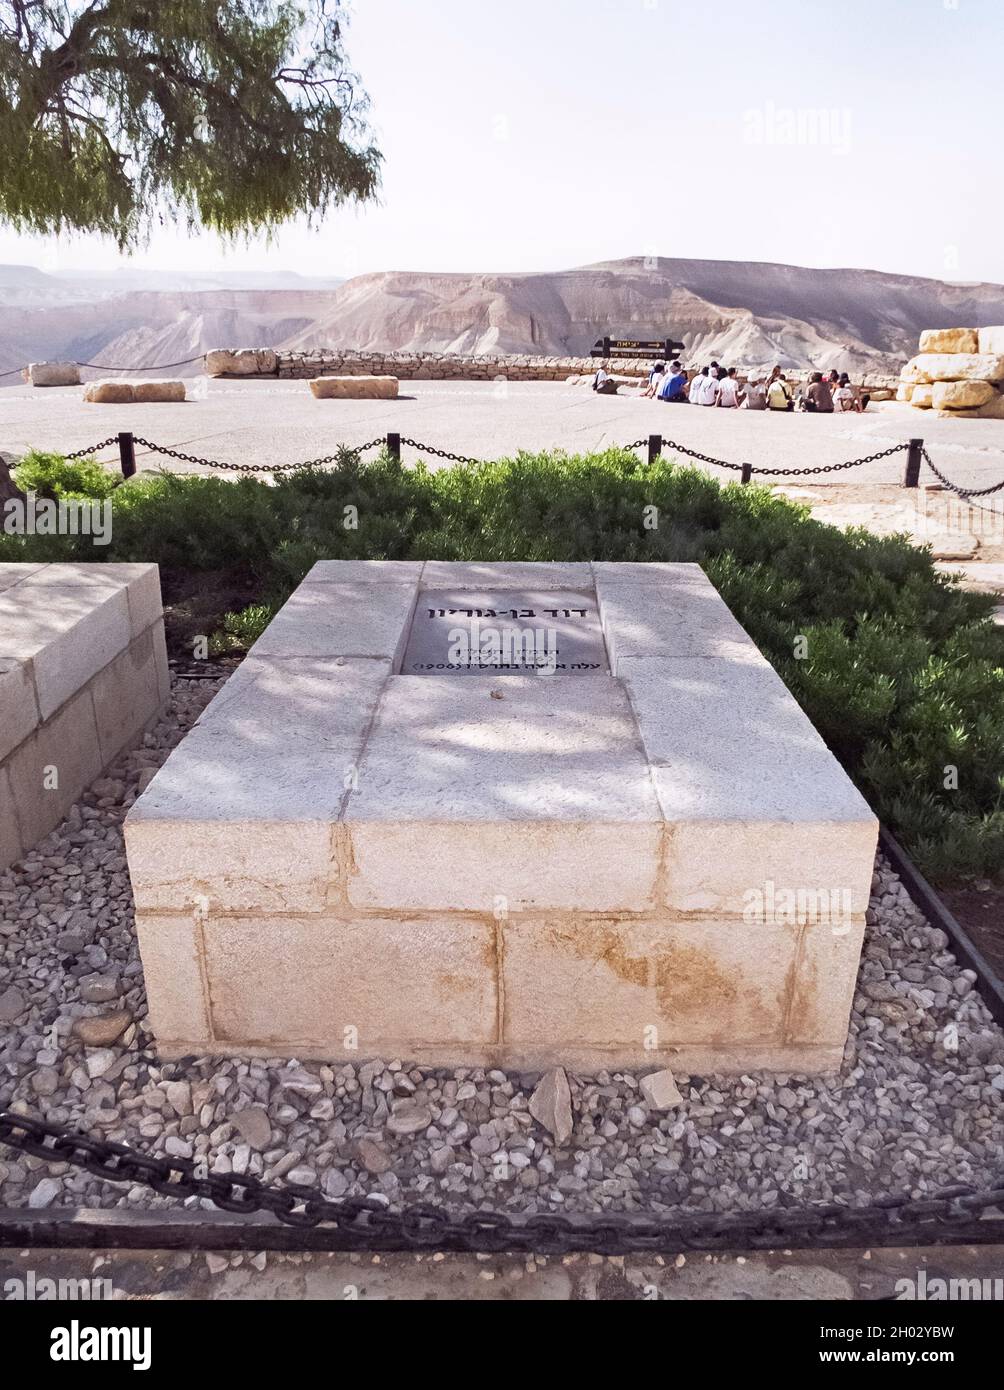 Tombe de David Ben Gurion premier Premier ministre d'Israël haut au-dessus de la vallée de Zin près de SDE Boker en Israël avec un groupe de tournée et le ciel en arrière-plan Banque D'Images